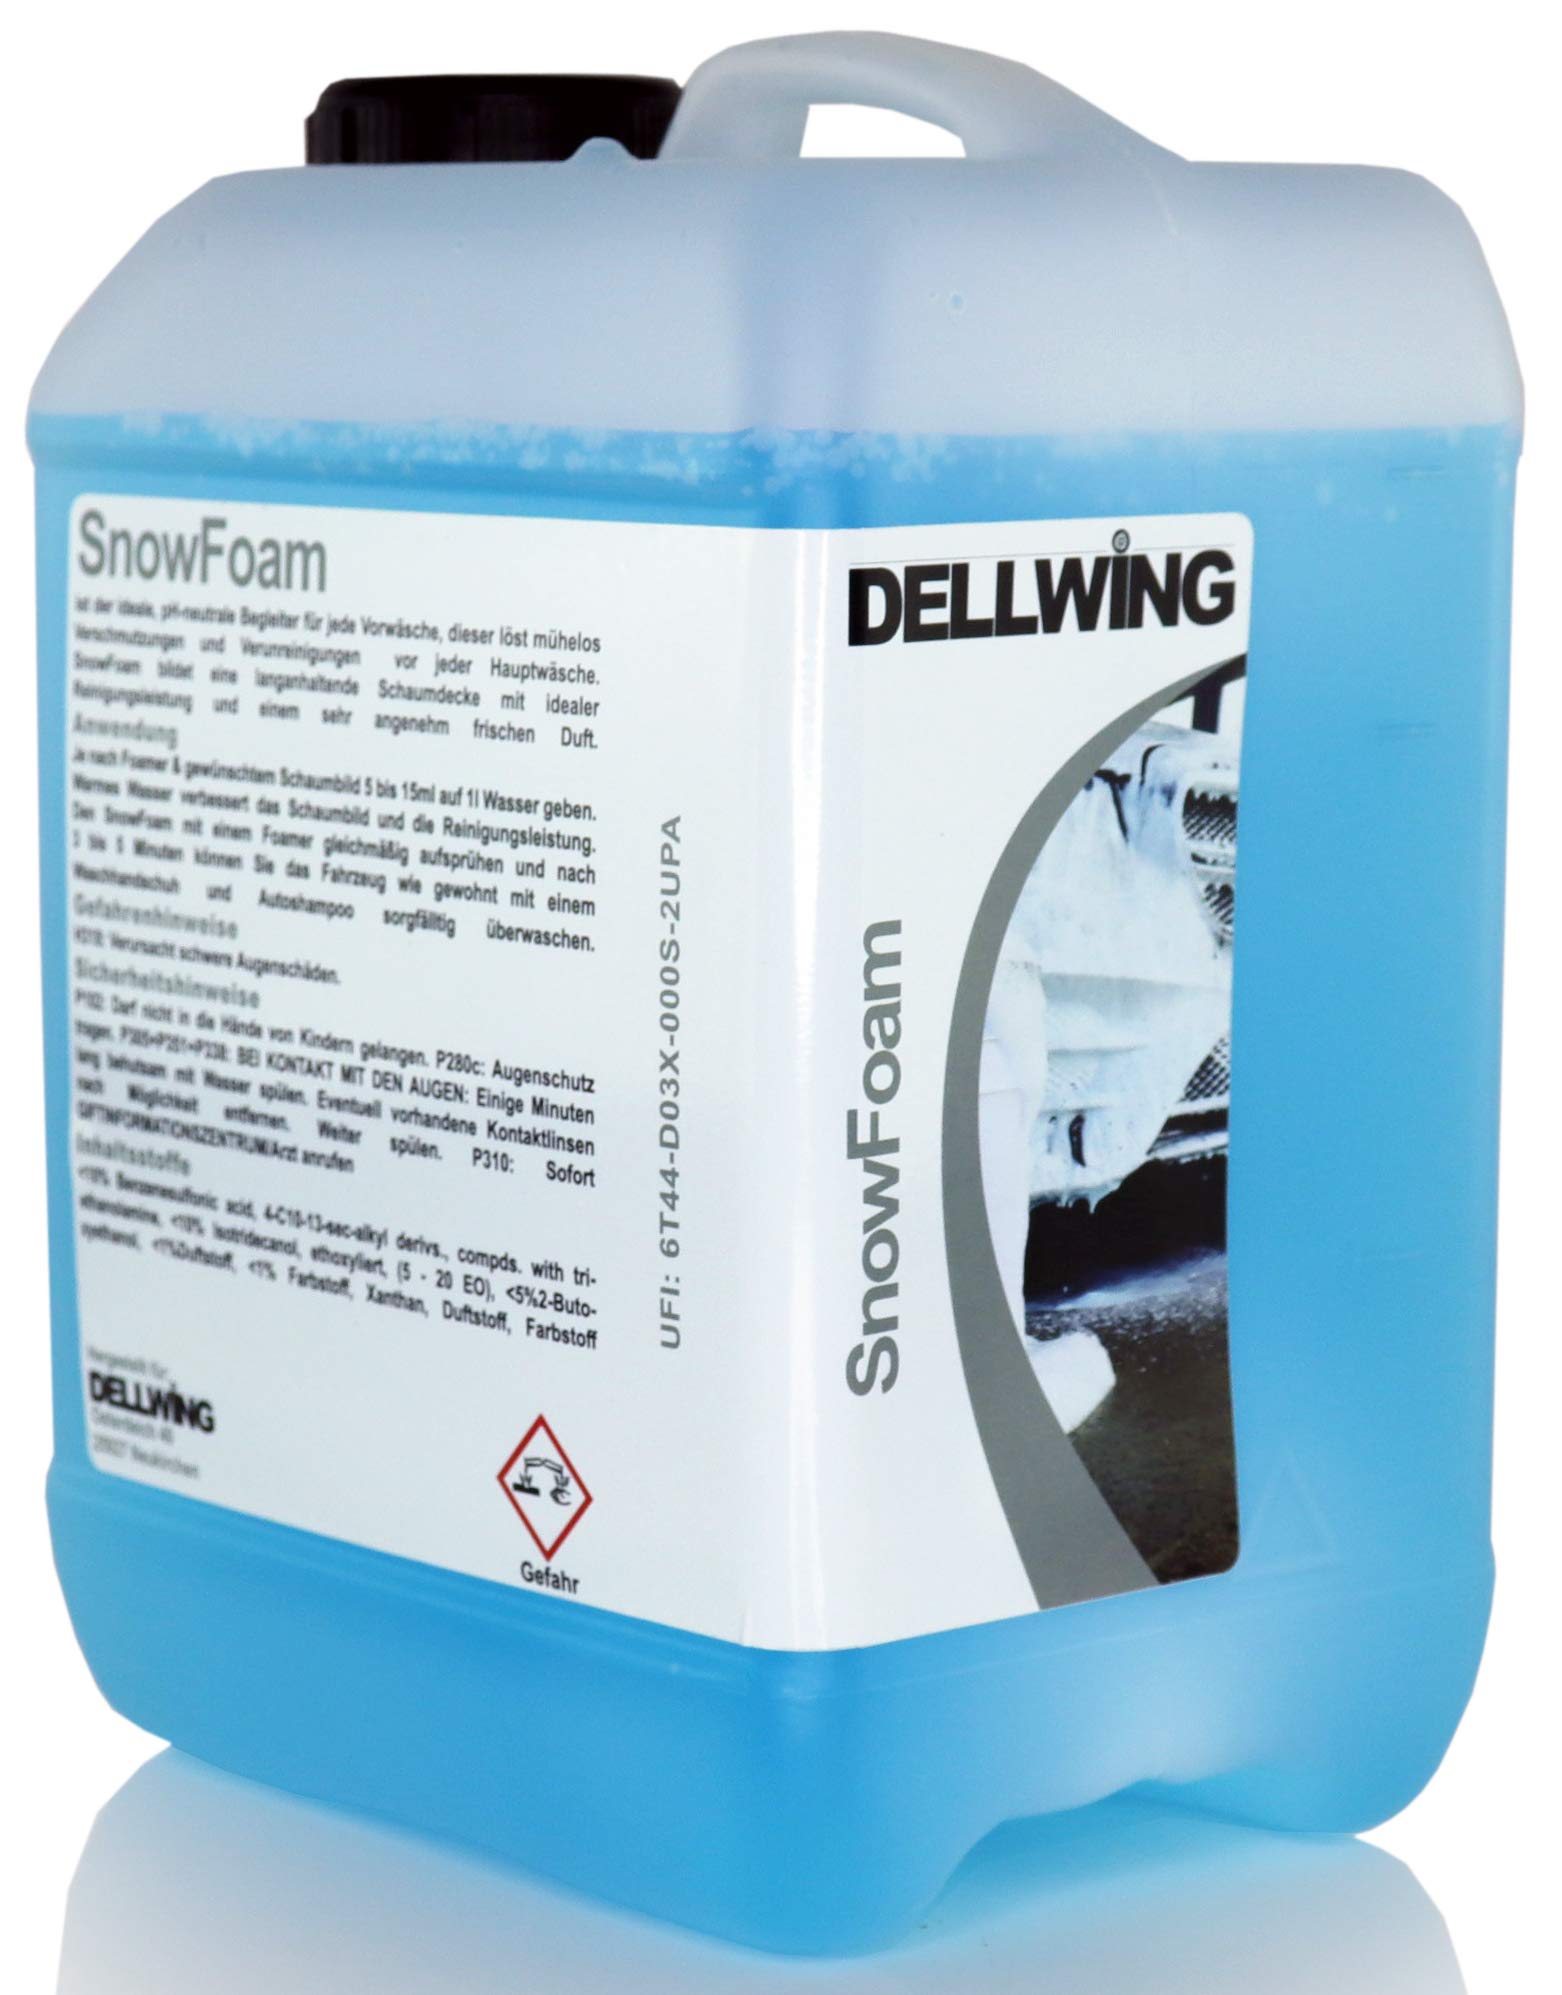 DELLWING Snow Foam WasserMelone 2,5 L - Ideal für die sanfte Vorwäsche - Bildet eine dicke und langanhaltende Schaumdecke mit einem schönen Duft von DELLWING